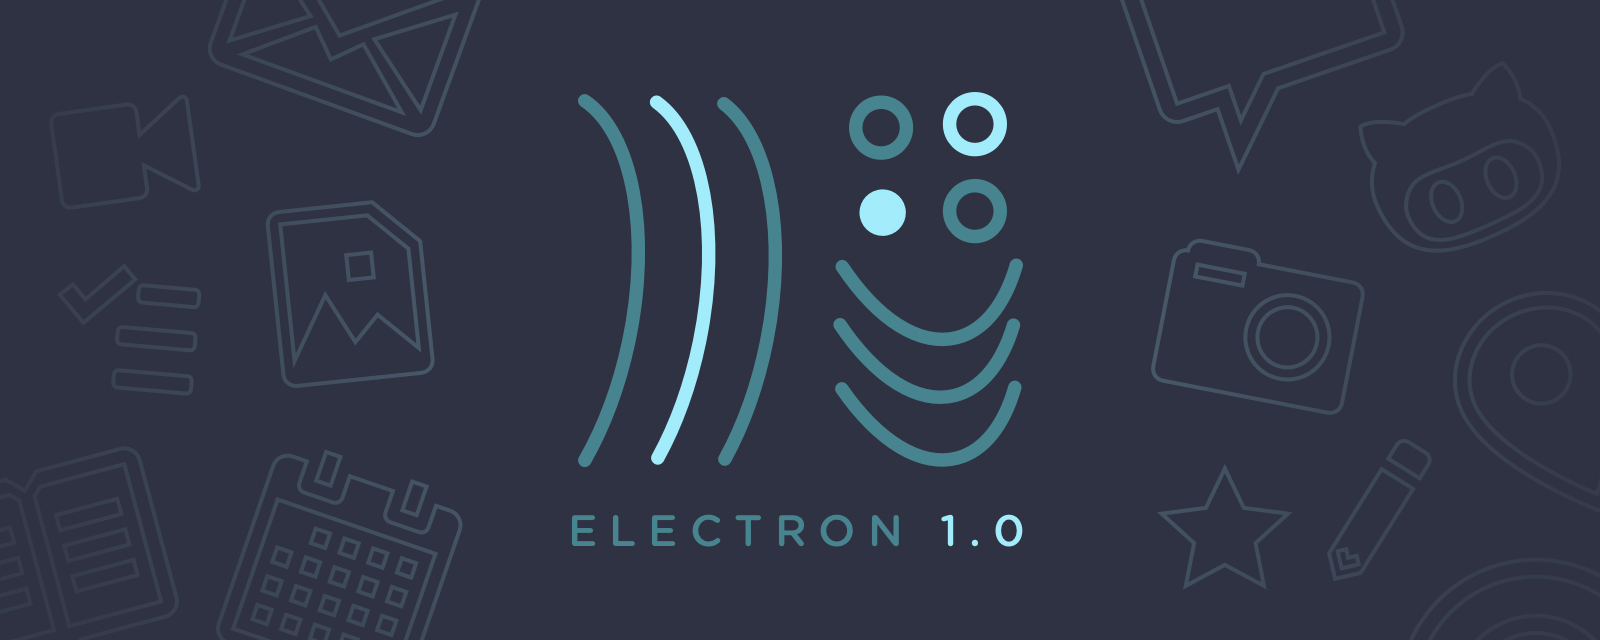 Electron 1.0iuOj